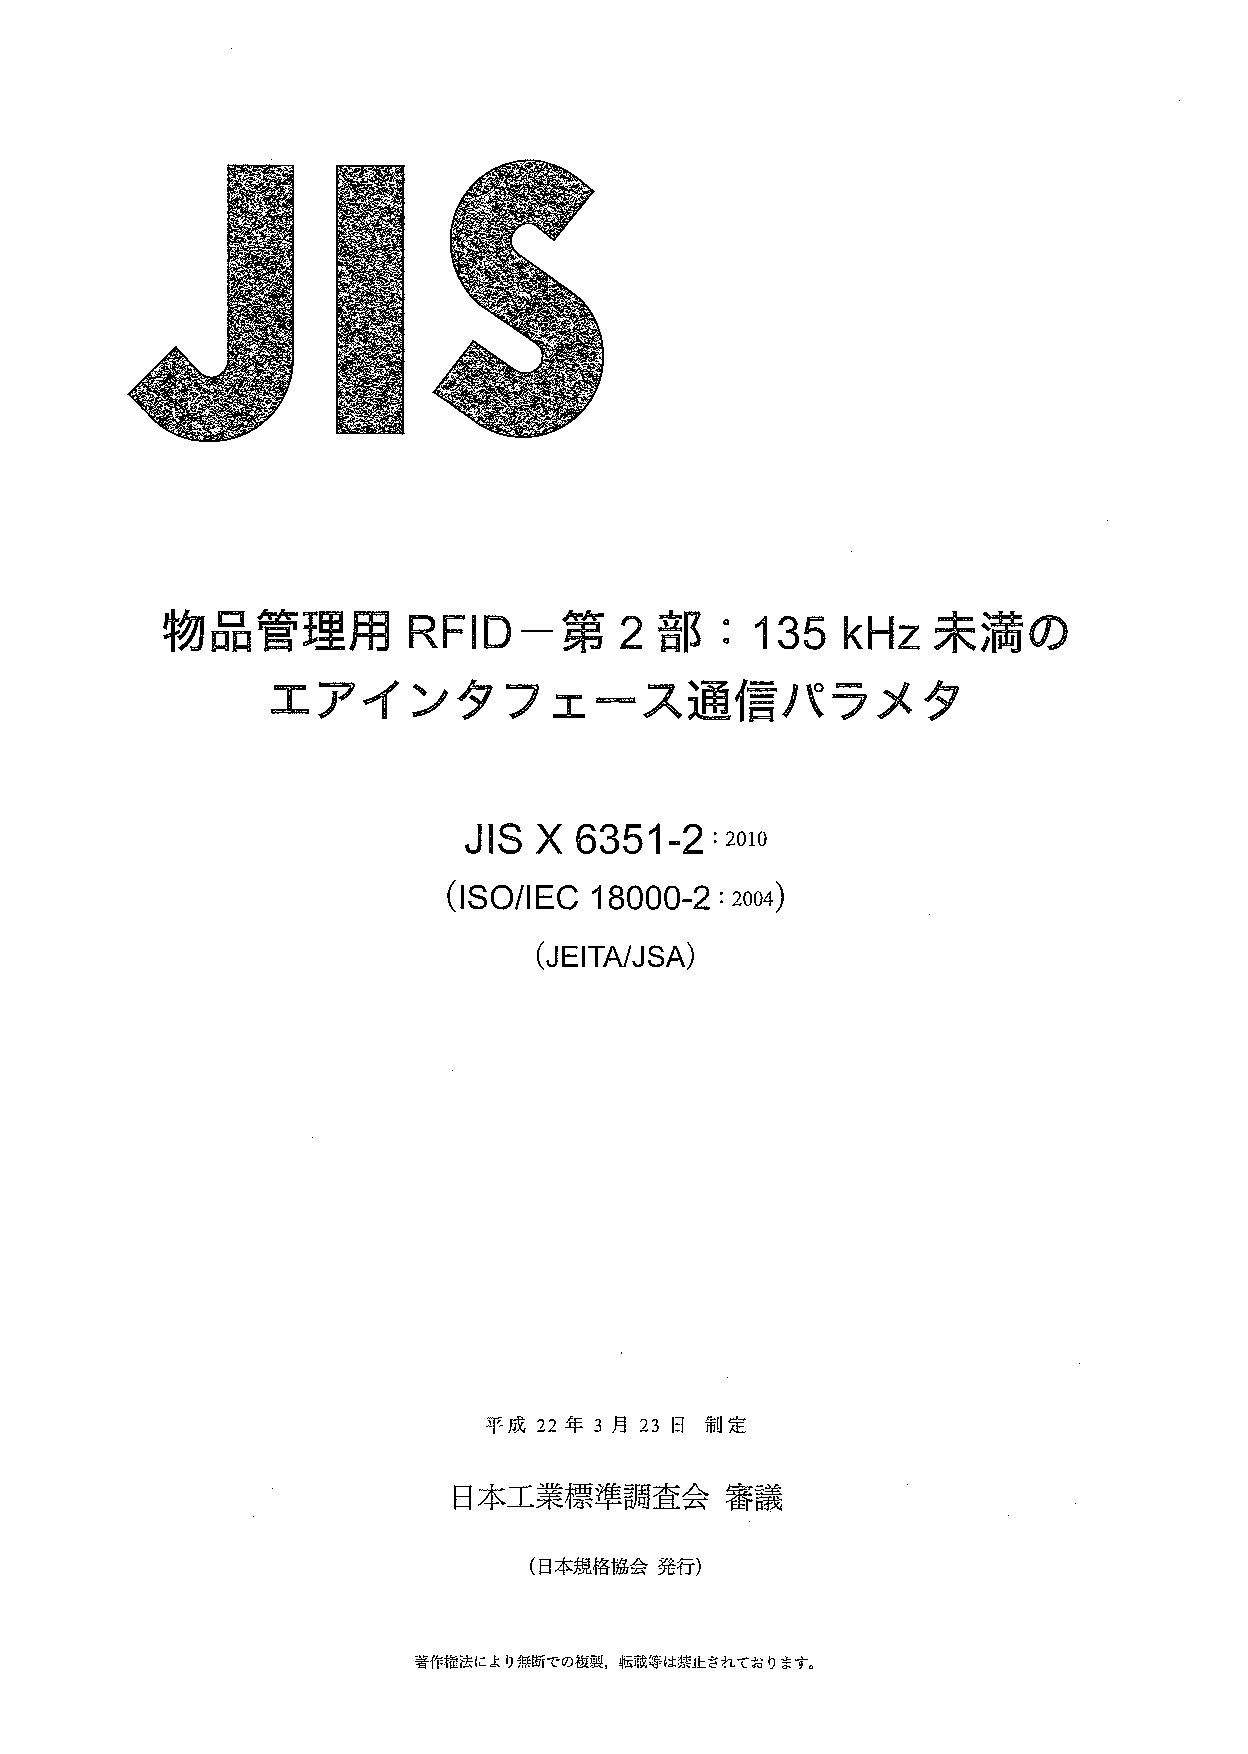 JIS X 6351-2:2010